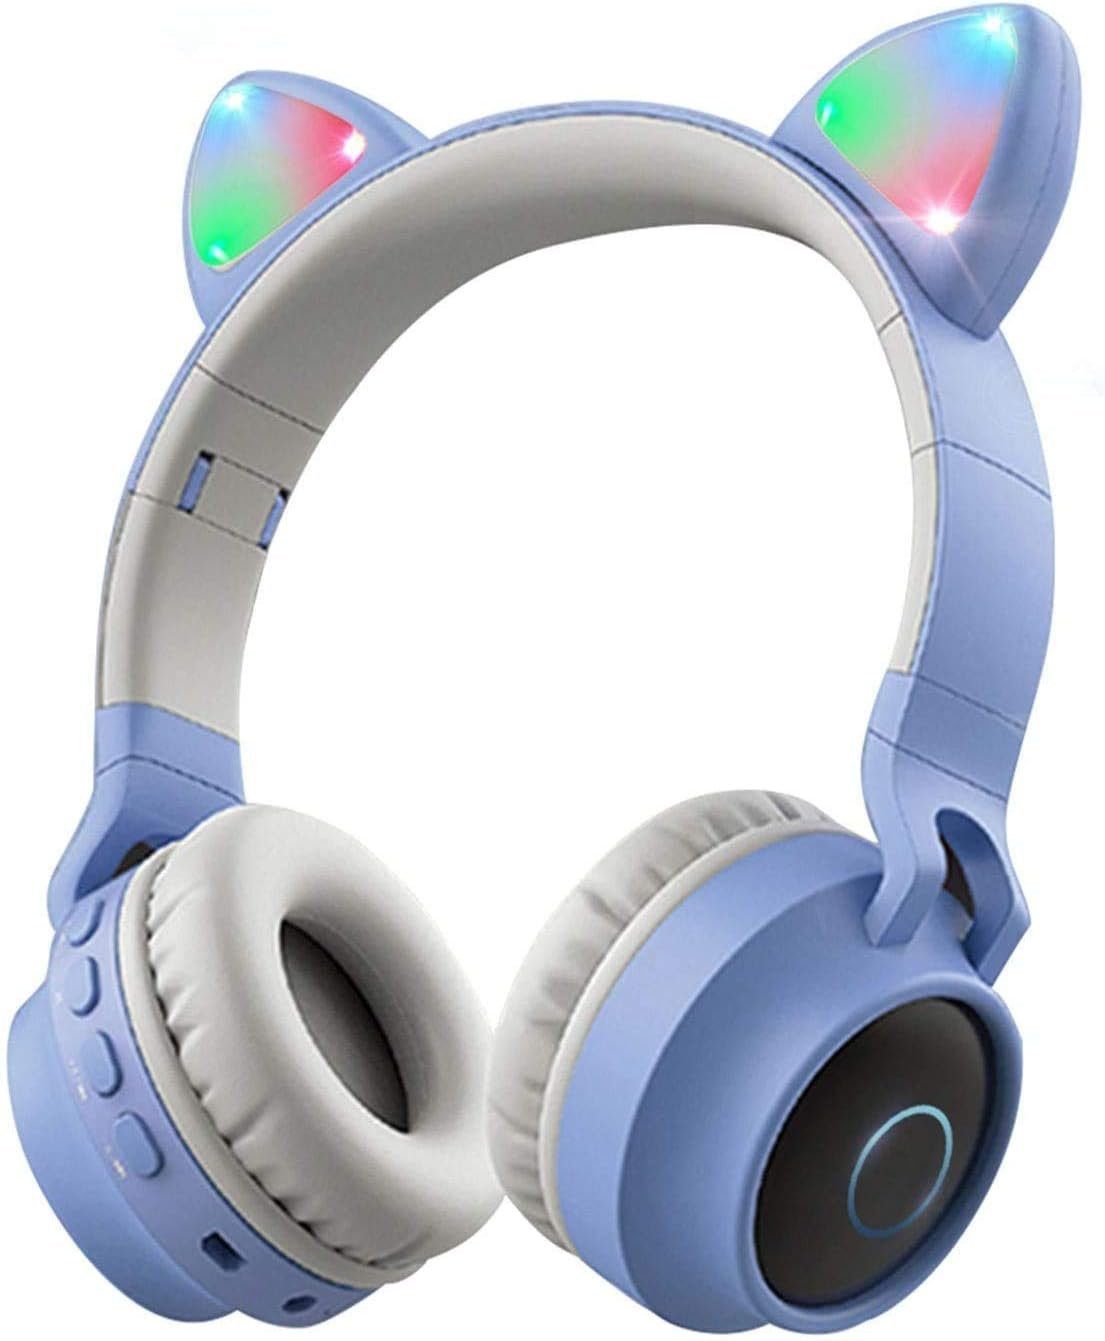 YUHRO Kabelloser Kinder-Kopfhörer mit Mikrofon und Lautstärkeregelung. Over-Ear-Kopfhörer (Für Smartphones/Laptops/PCs geeignet, drei Musikwiedergabemodi) Blau